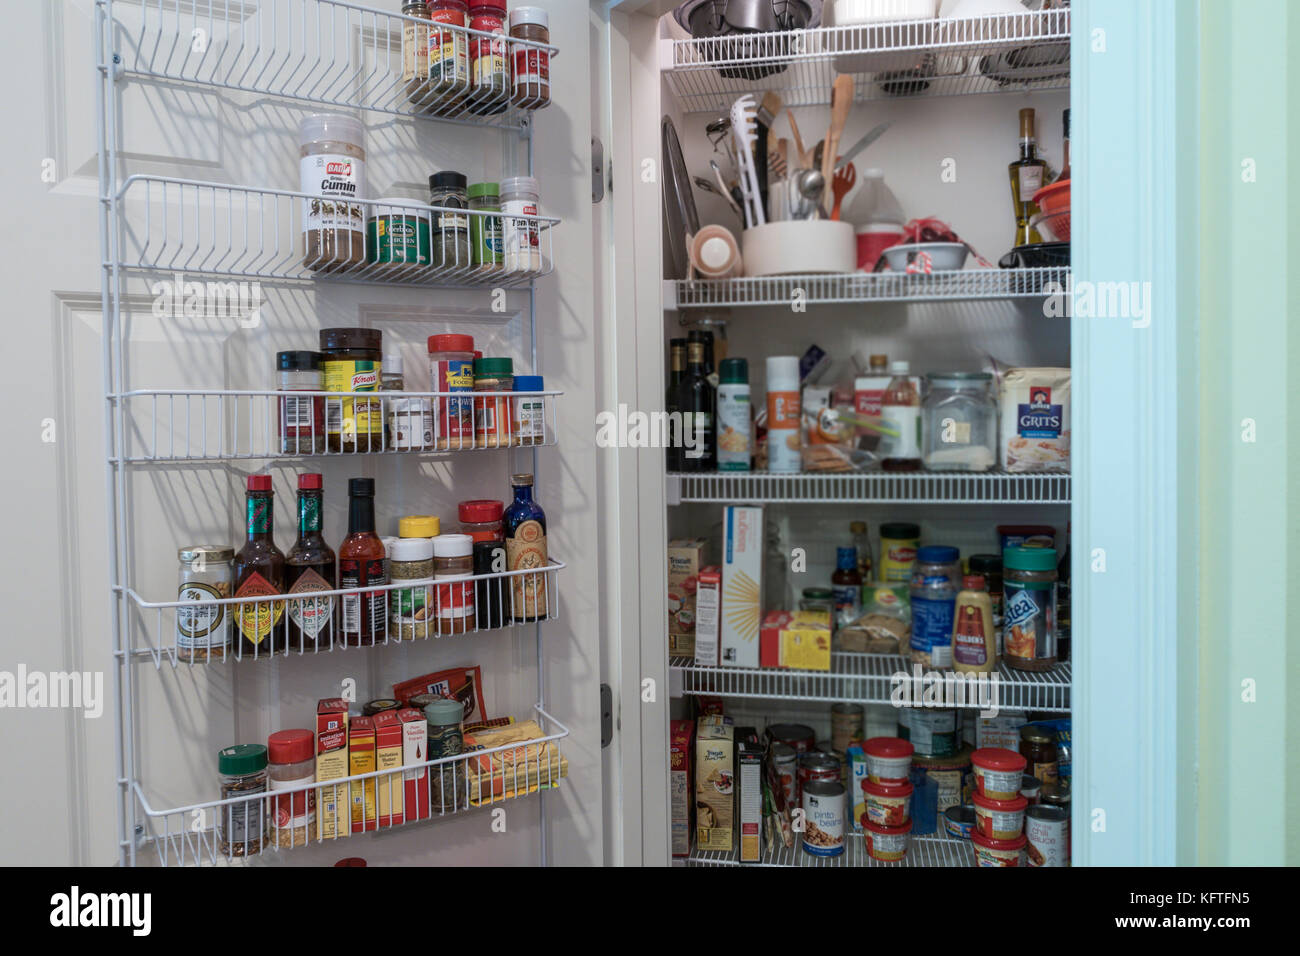 Cucina dispensa immagini e fotografie stock ad alta risoluzione - Alamy